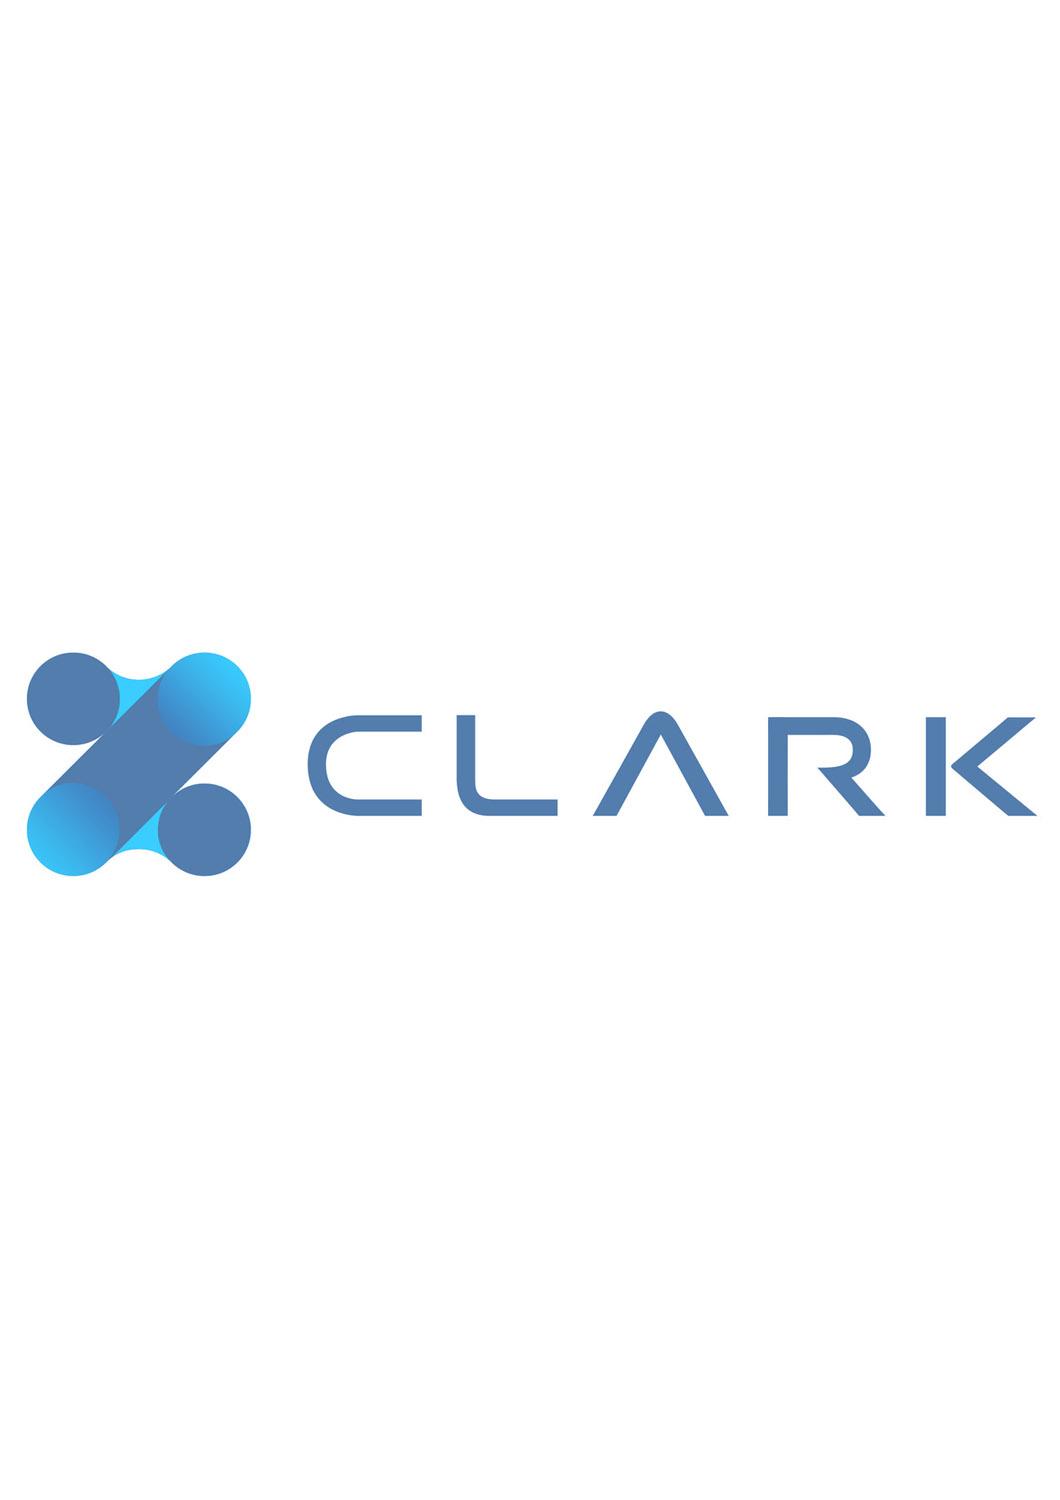 CLARK 商标公告